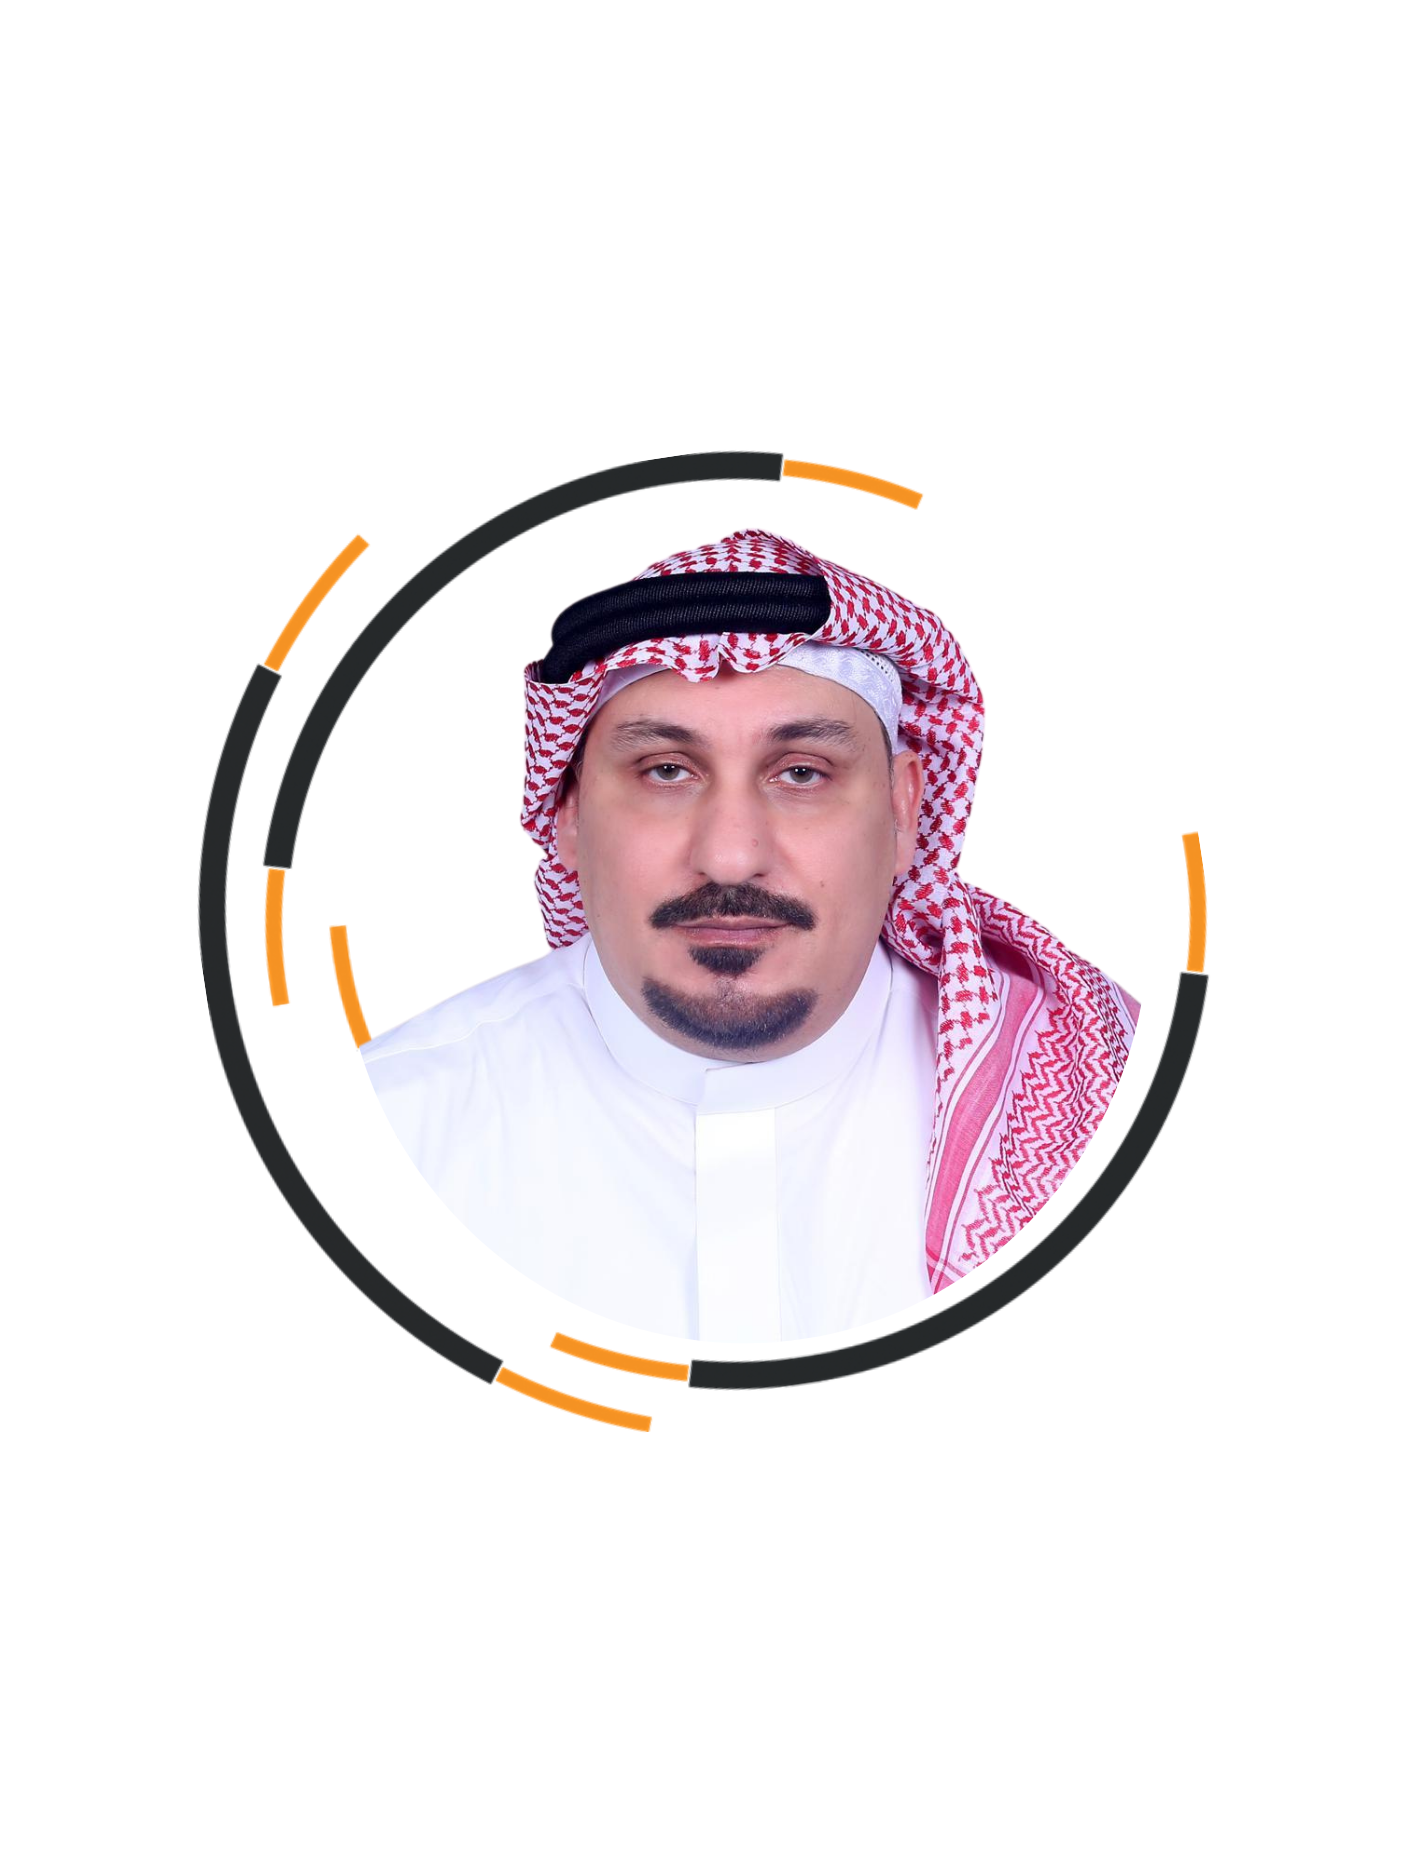 Mr. Khalid bin Asaad Khashoggi